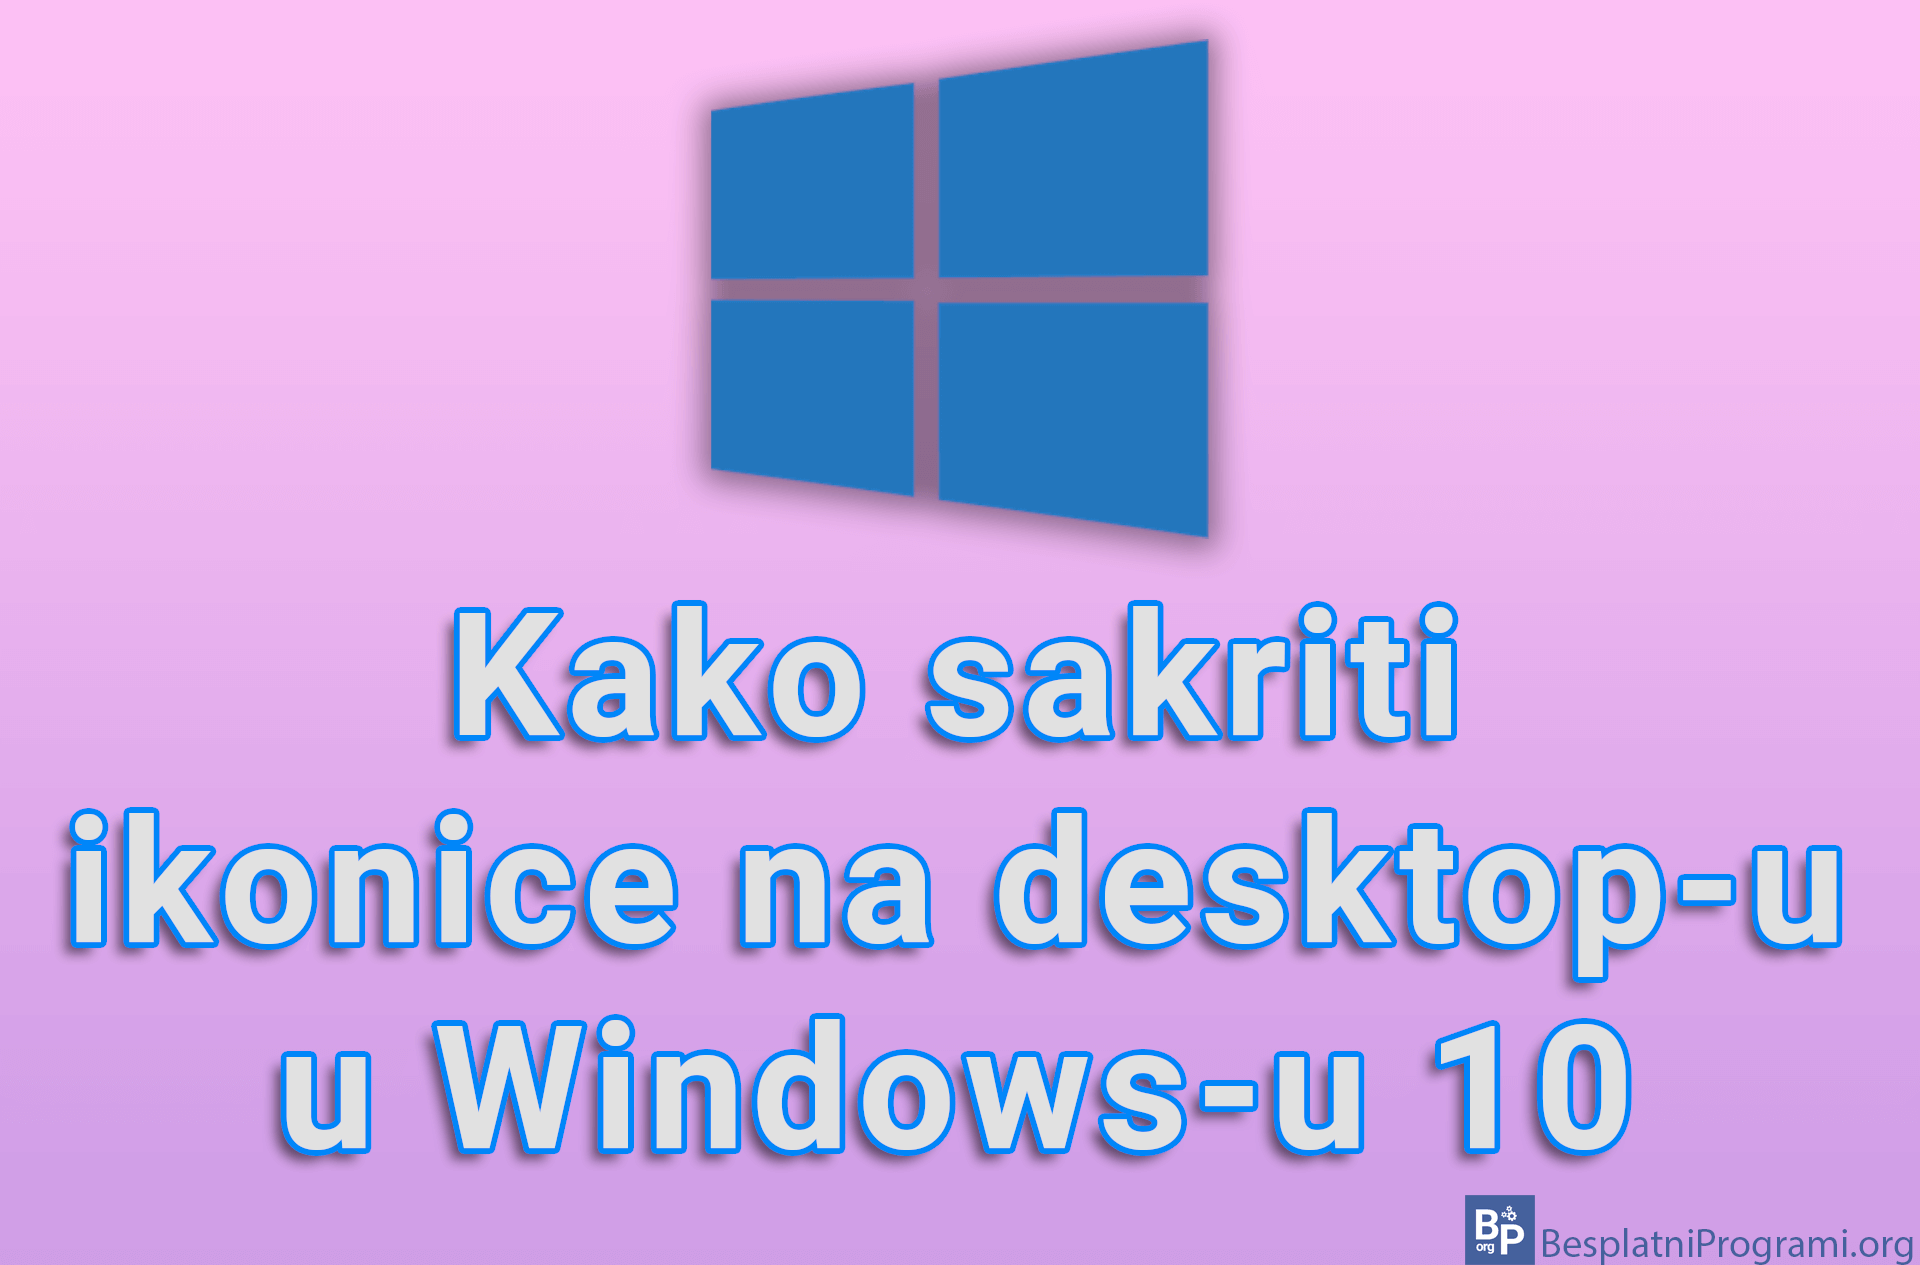 Kako sakriti ikonice na desktop-u u Windows-u 10